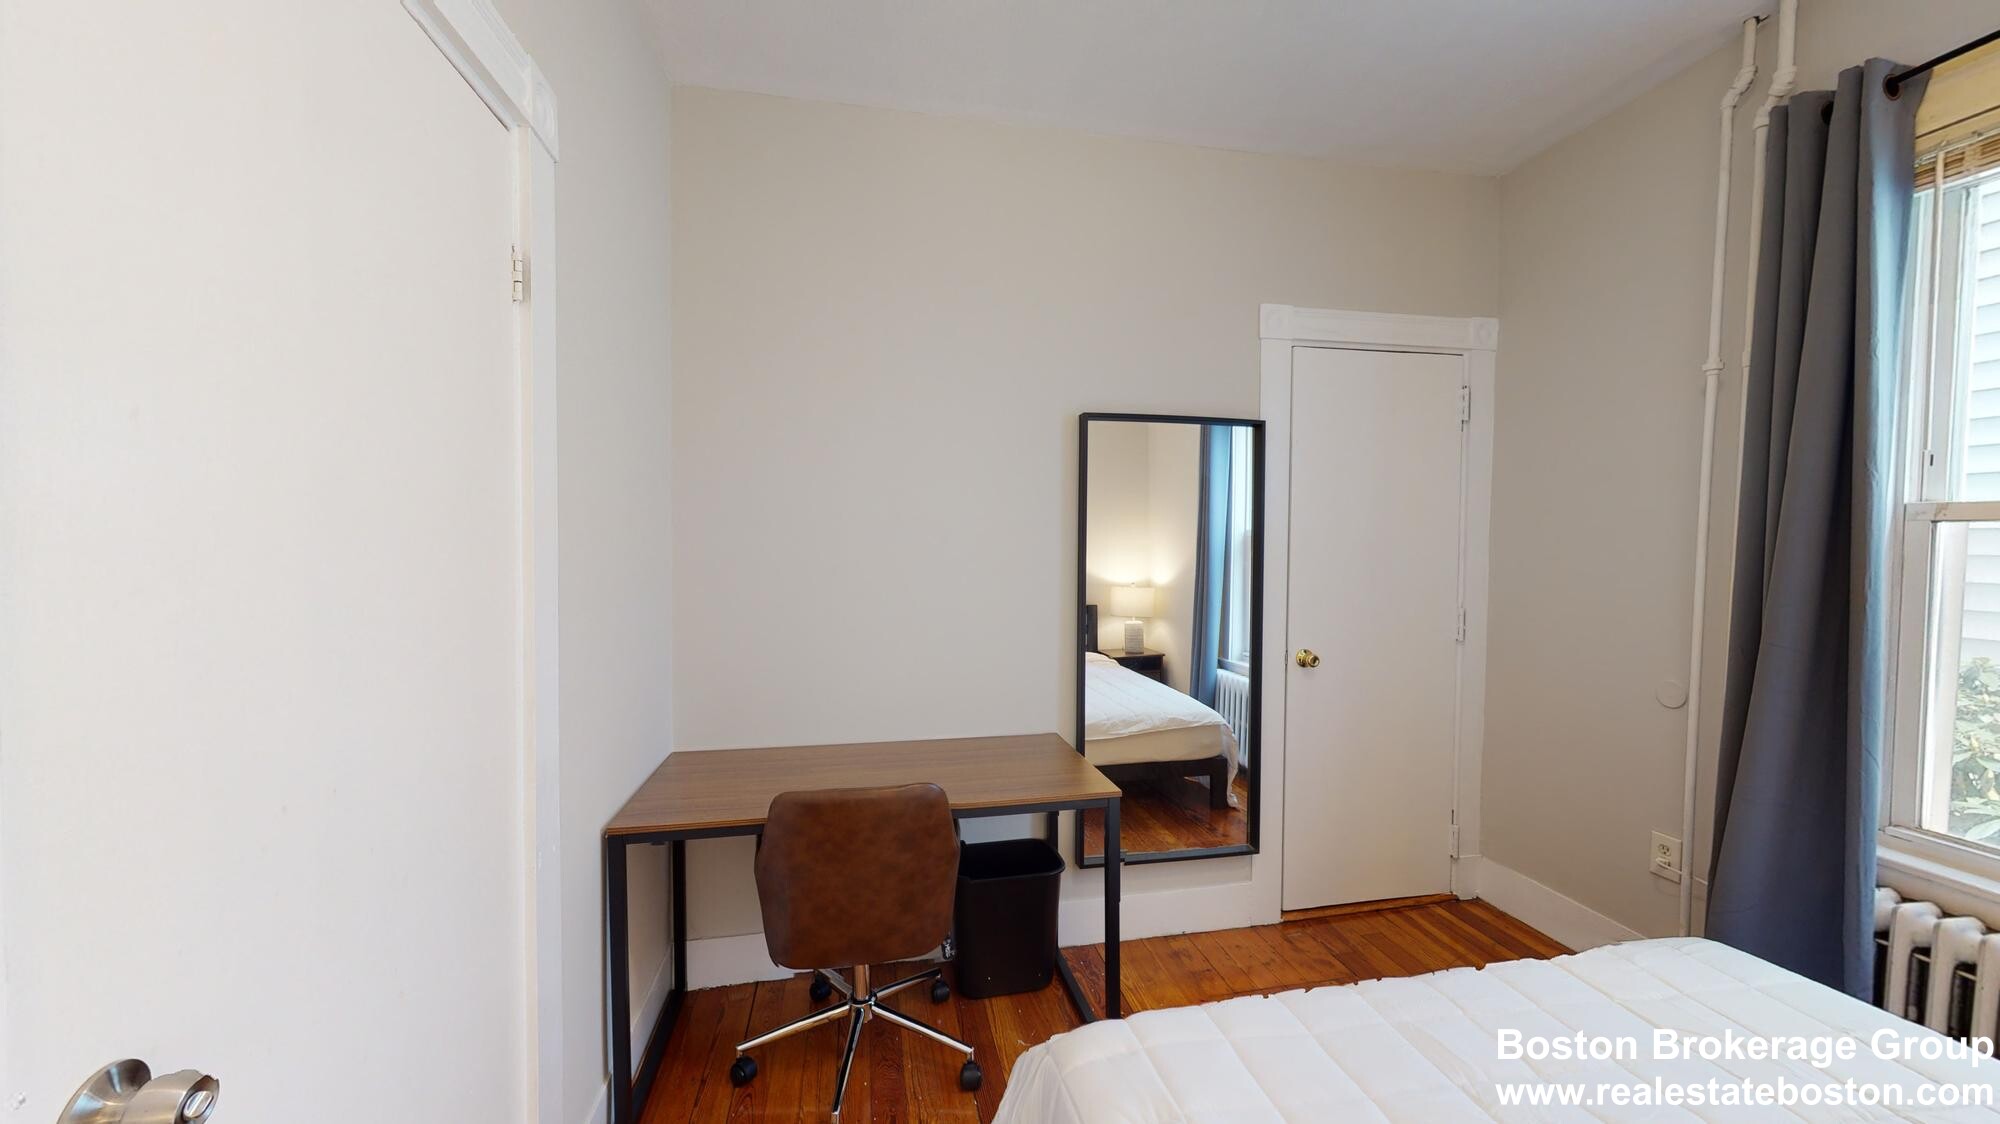 Photos of apartment on Elder,Boston MA 02125